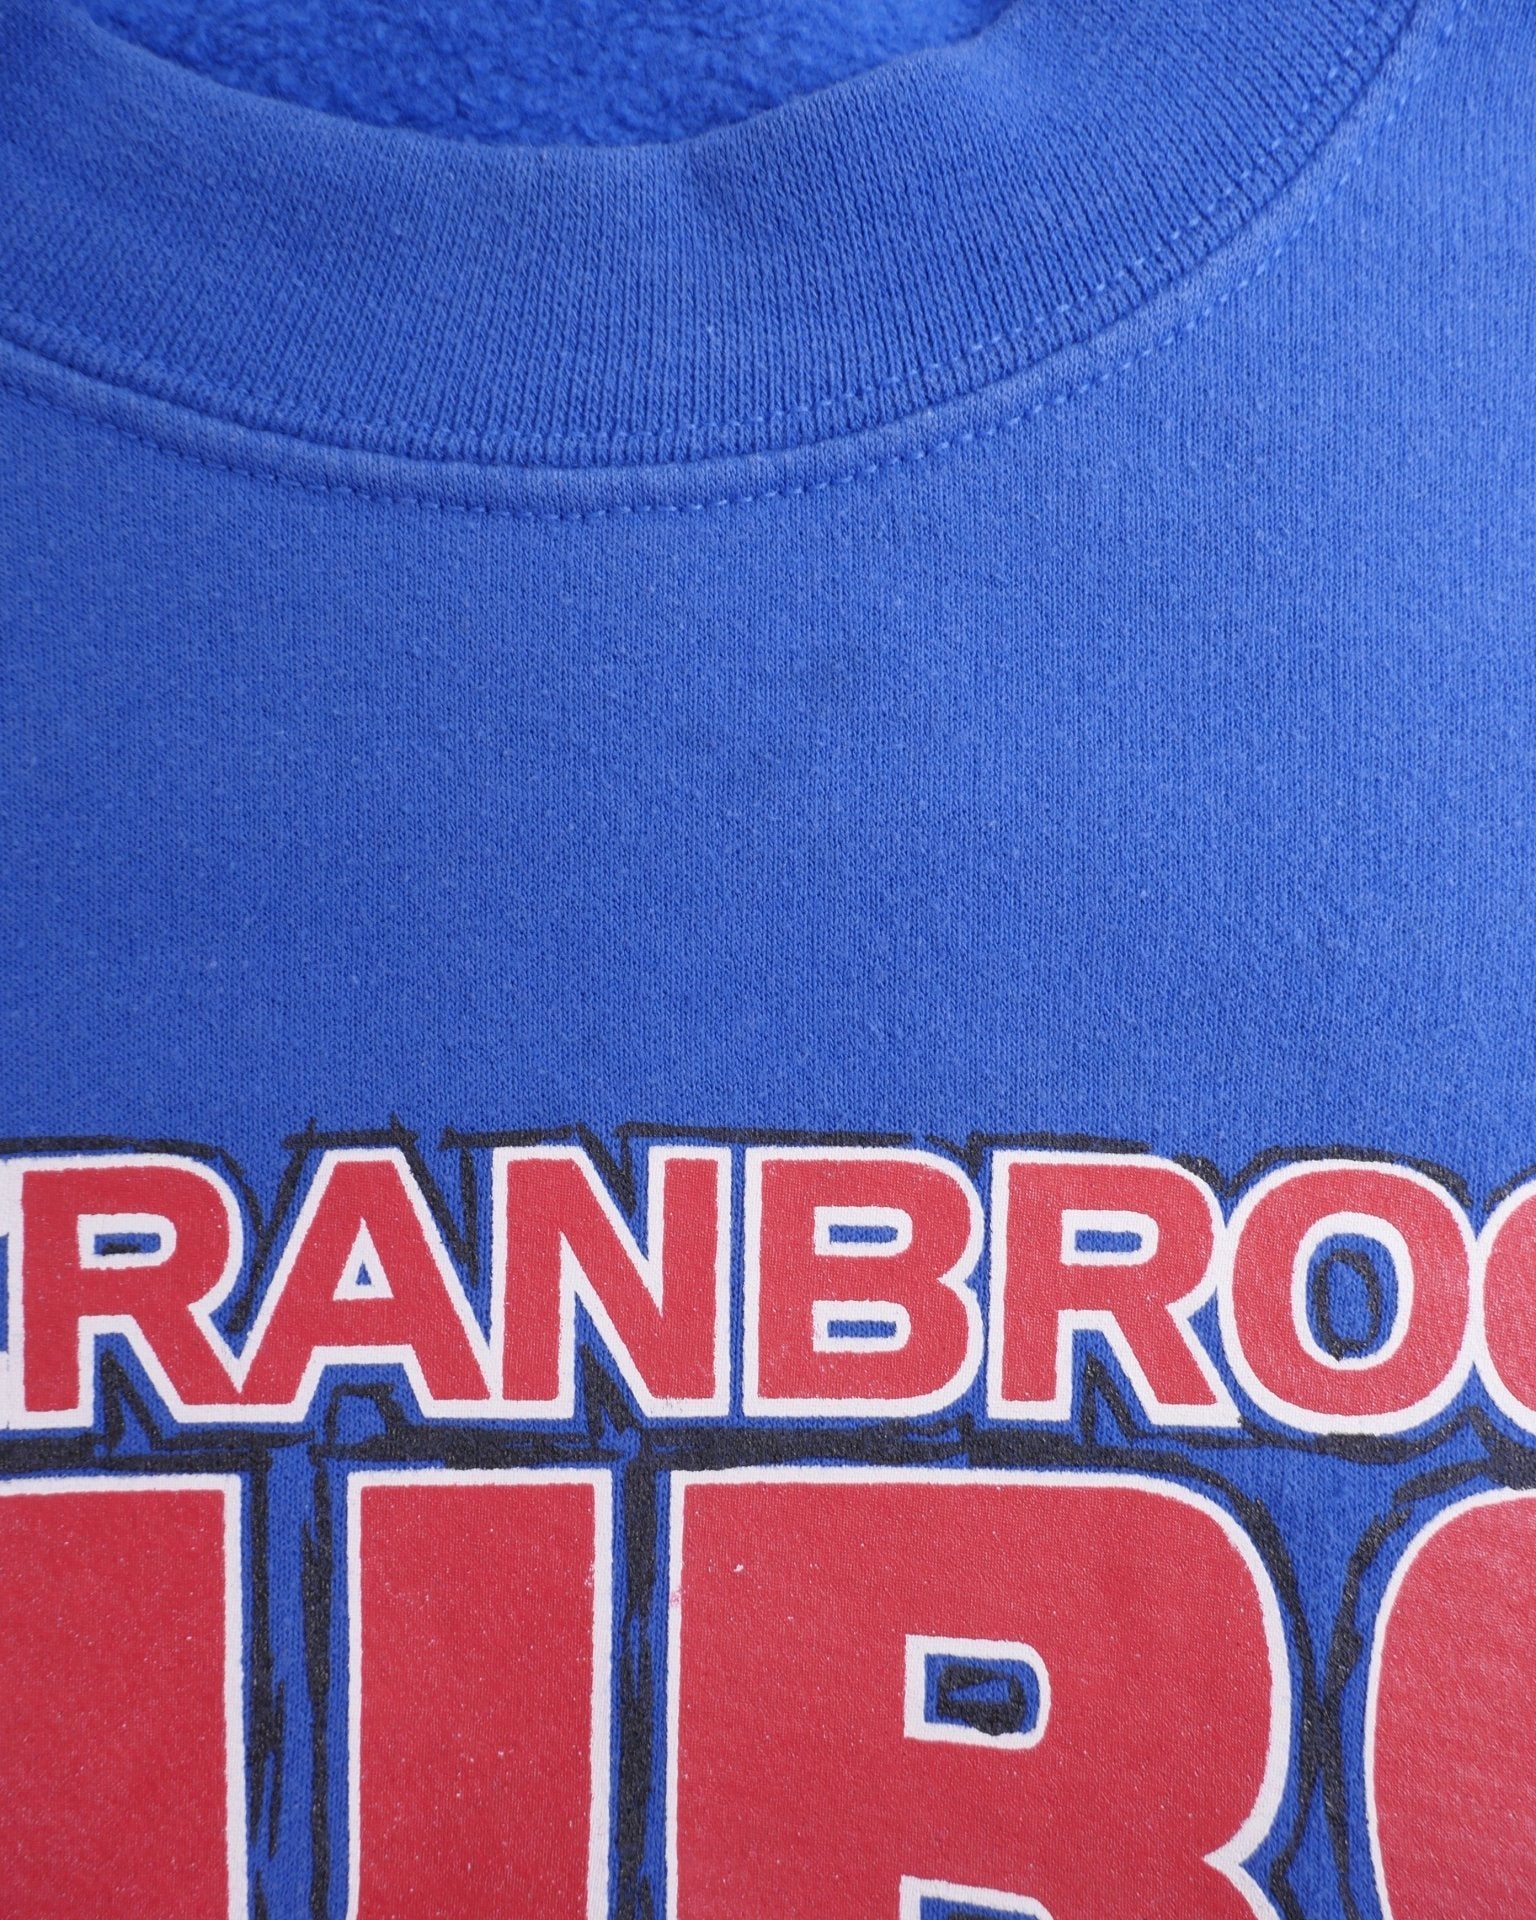 Cranbrook Cubs printed Logo Vintage Sweater - Peeces